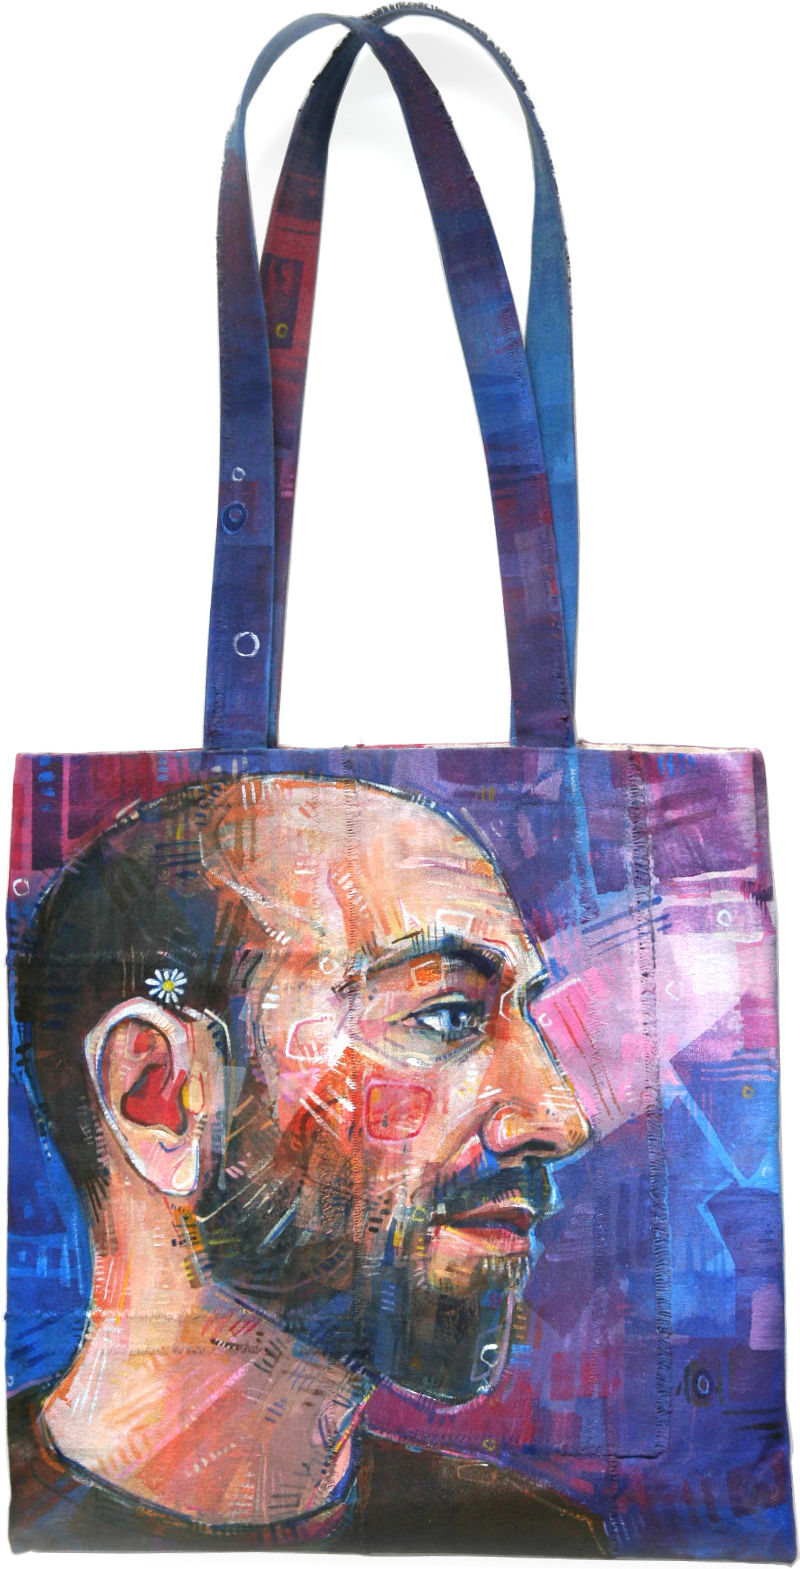 painted portrait on a canvas patchwork bag